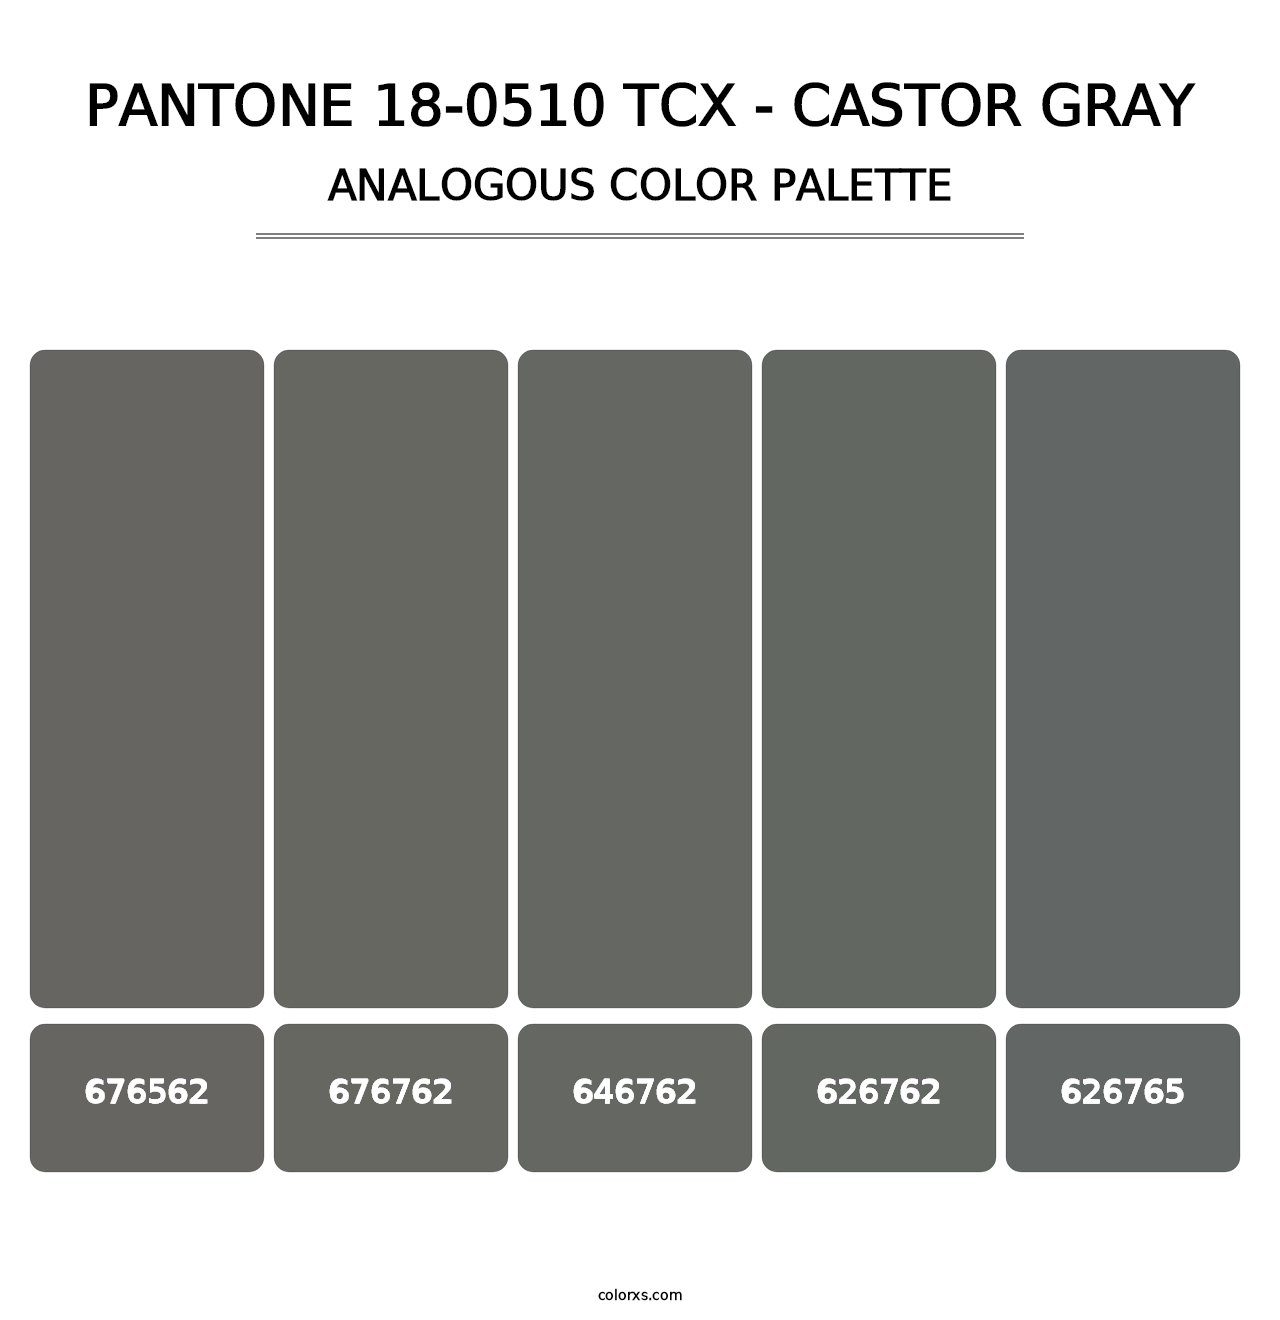 PANTONE 18-0510 TCX - Castor Gray - Analogous Color Palette